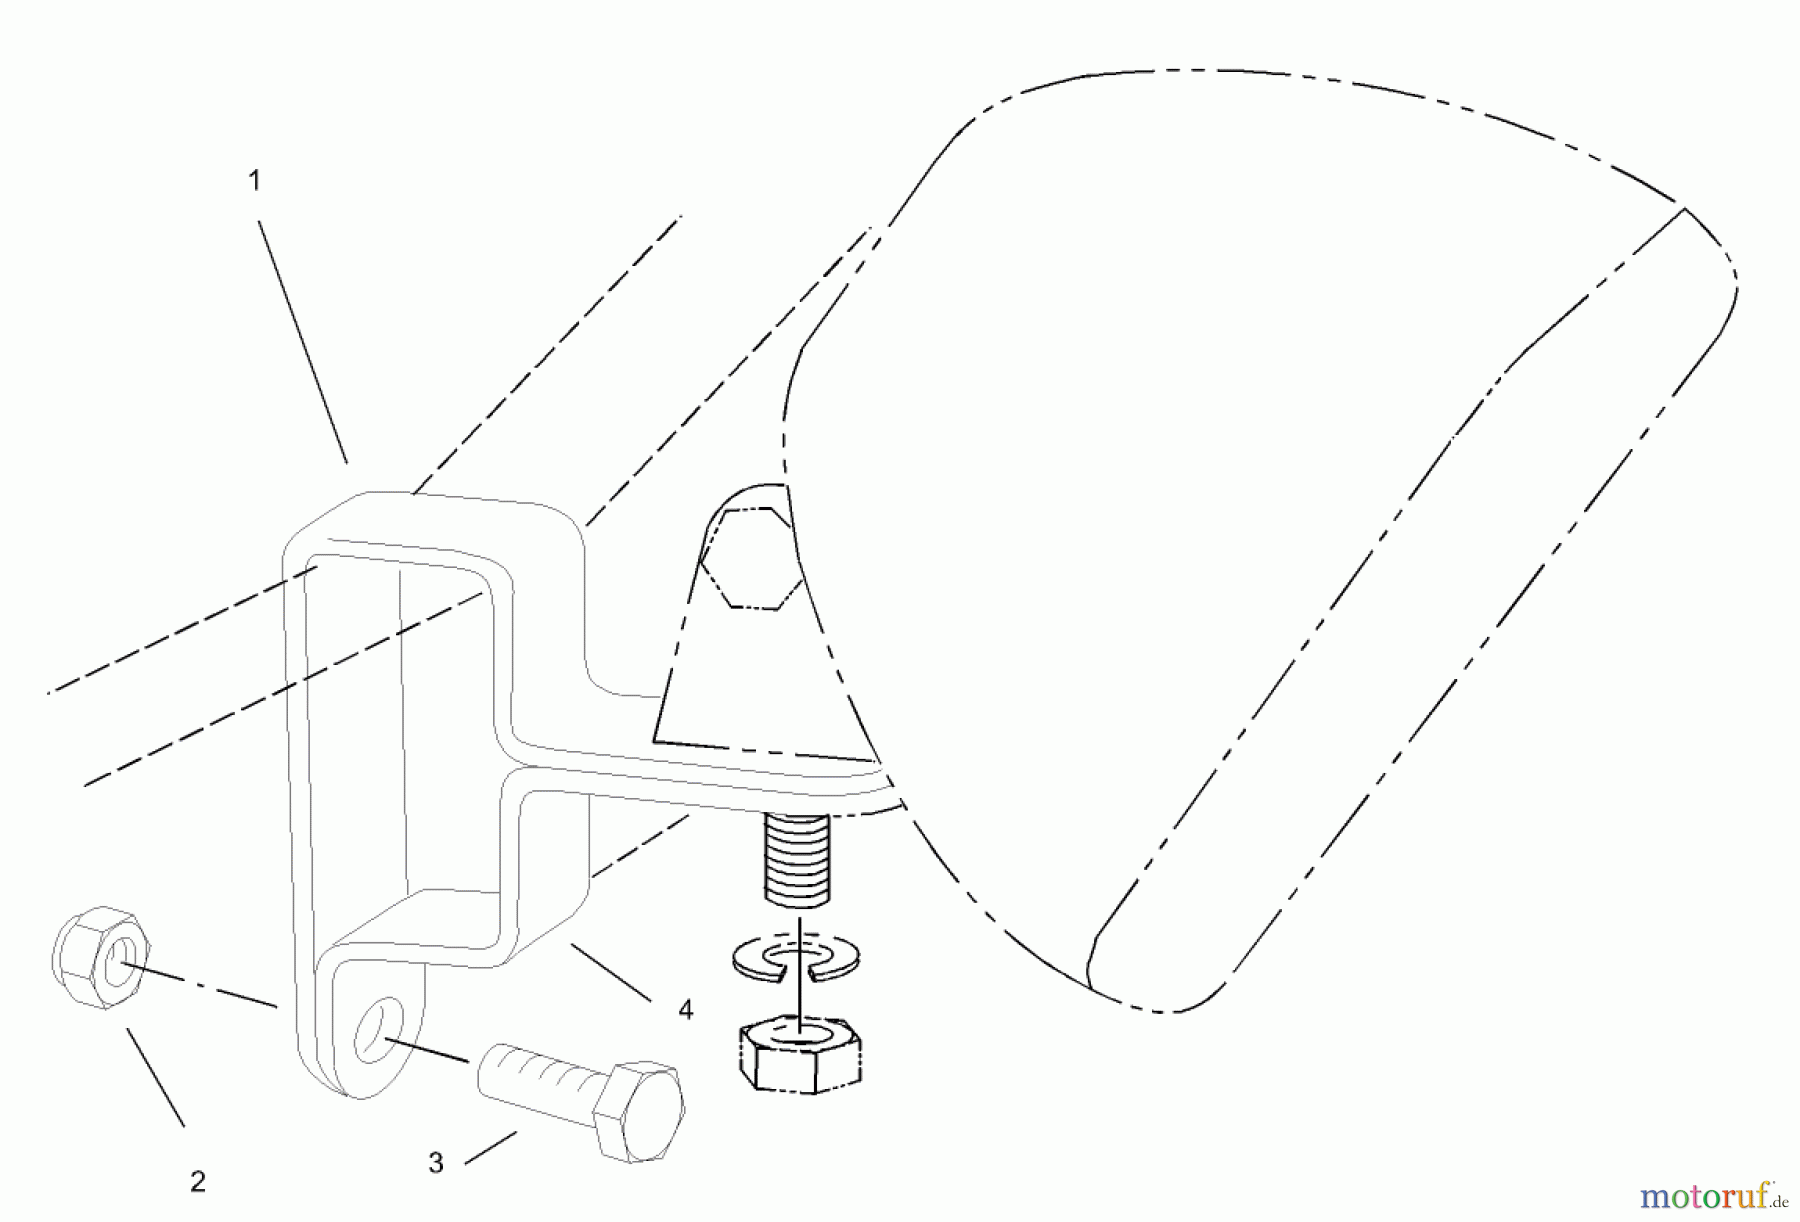  Toro Neu Accessories, Mower 107-9130 - Toro Light Kit, Zero-Turn-Radius Riding Mower LAMP MOUNTING ASSEMBLY